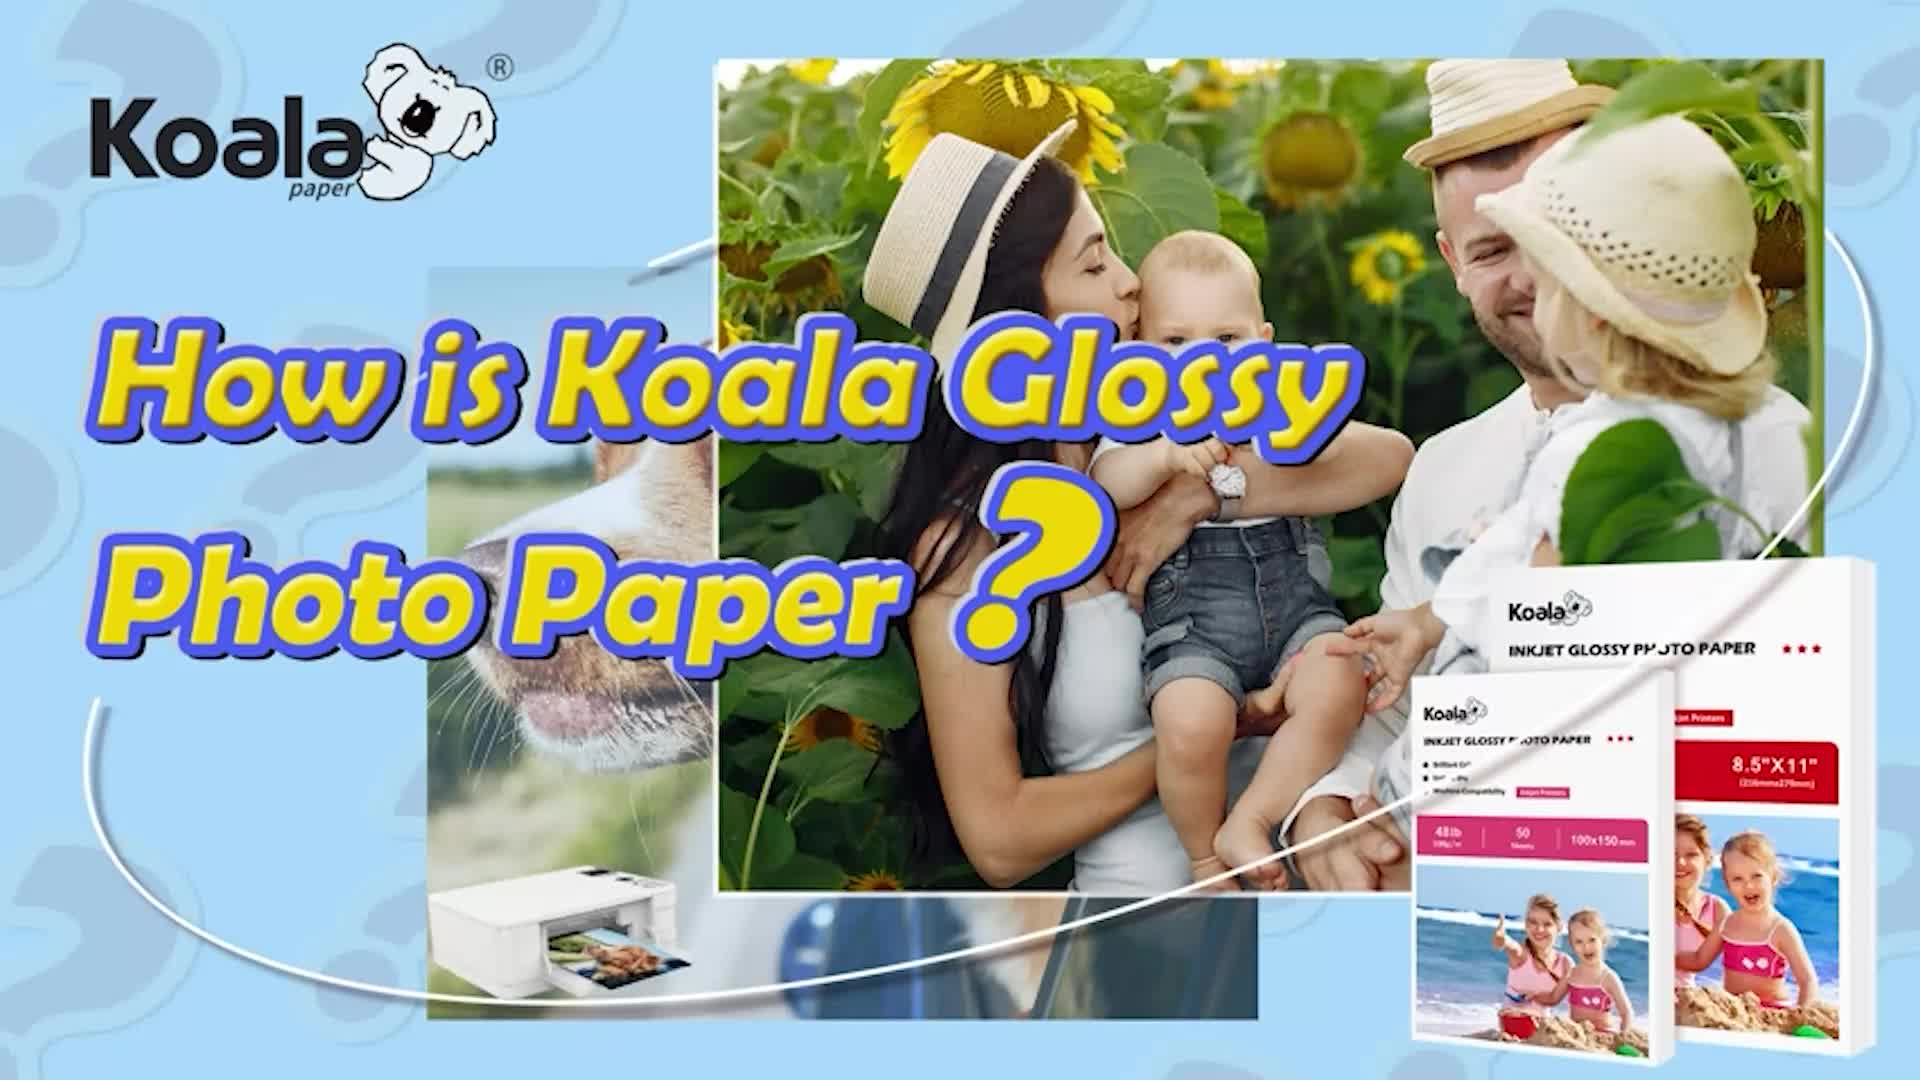 Koala Glossy Paper